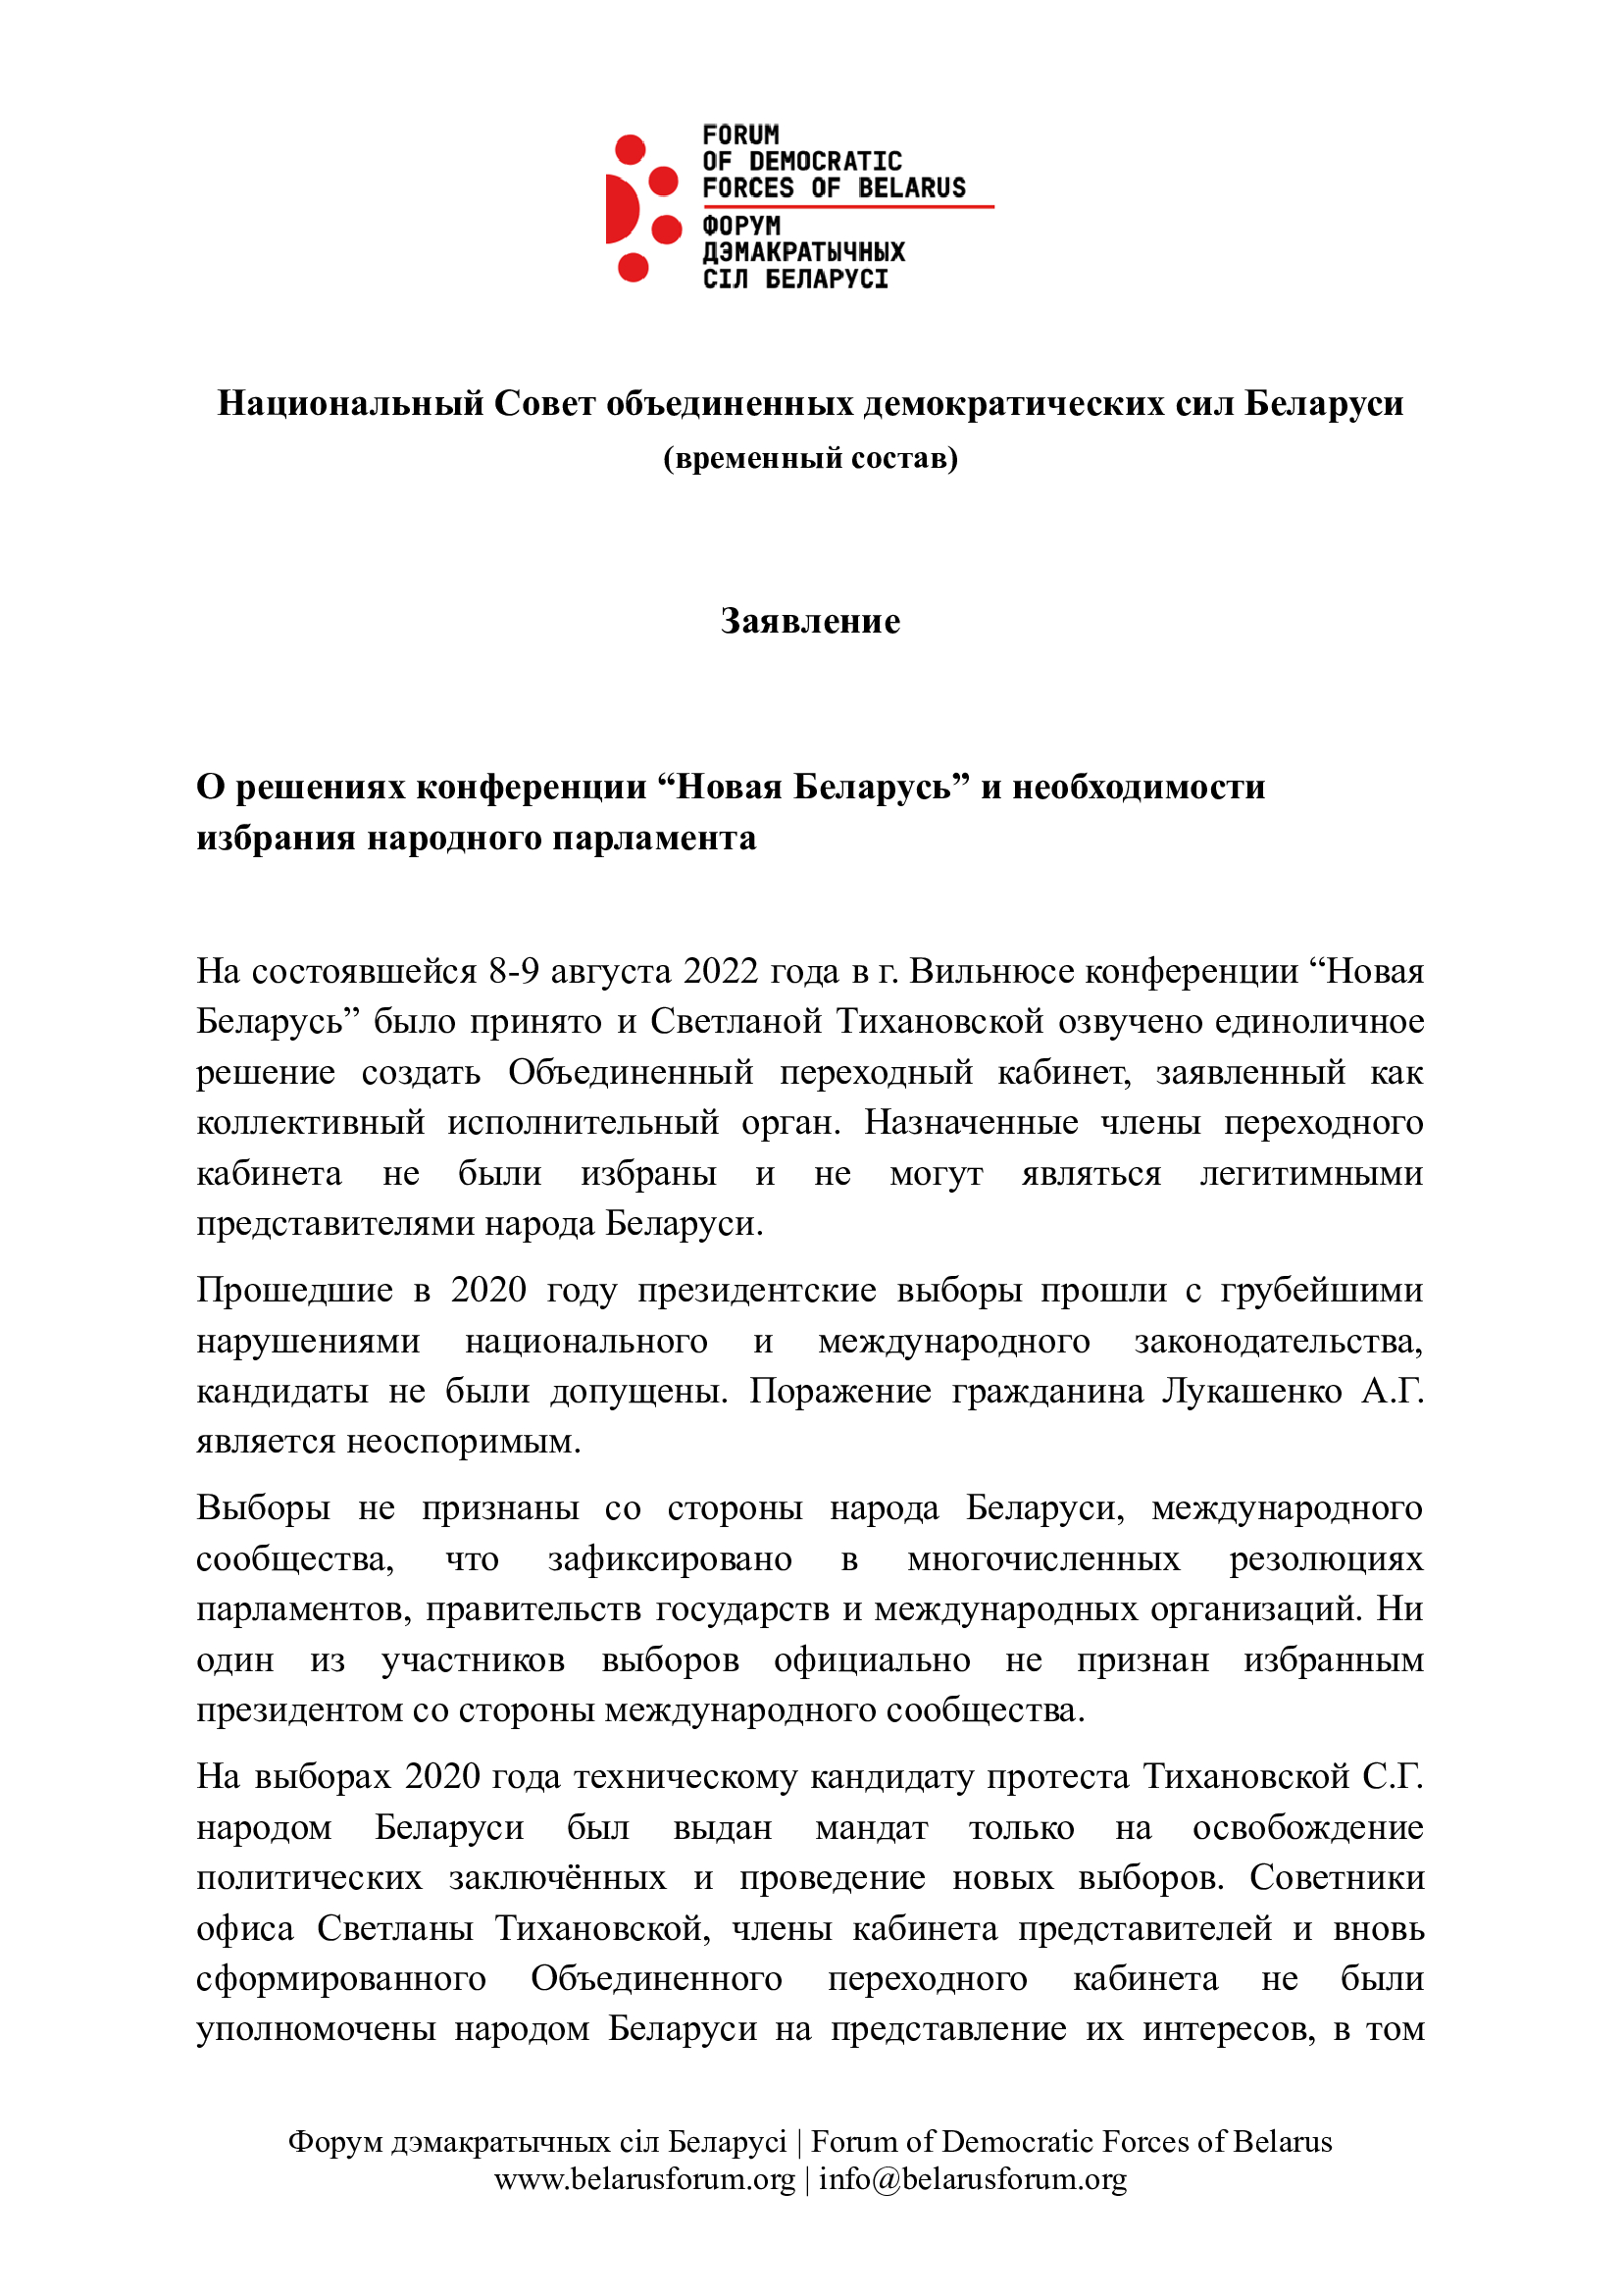 Заявление о решениях конференции “Новая Беларусь” и необходимости избрания народного парламента